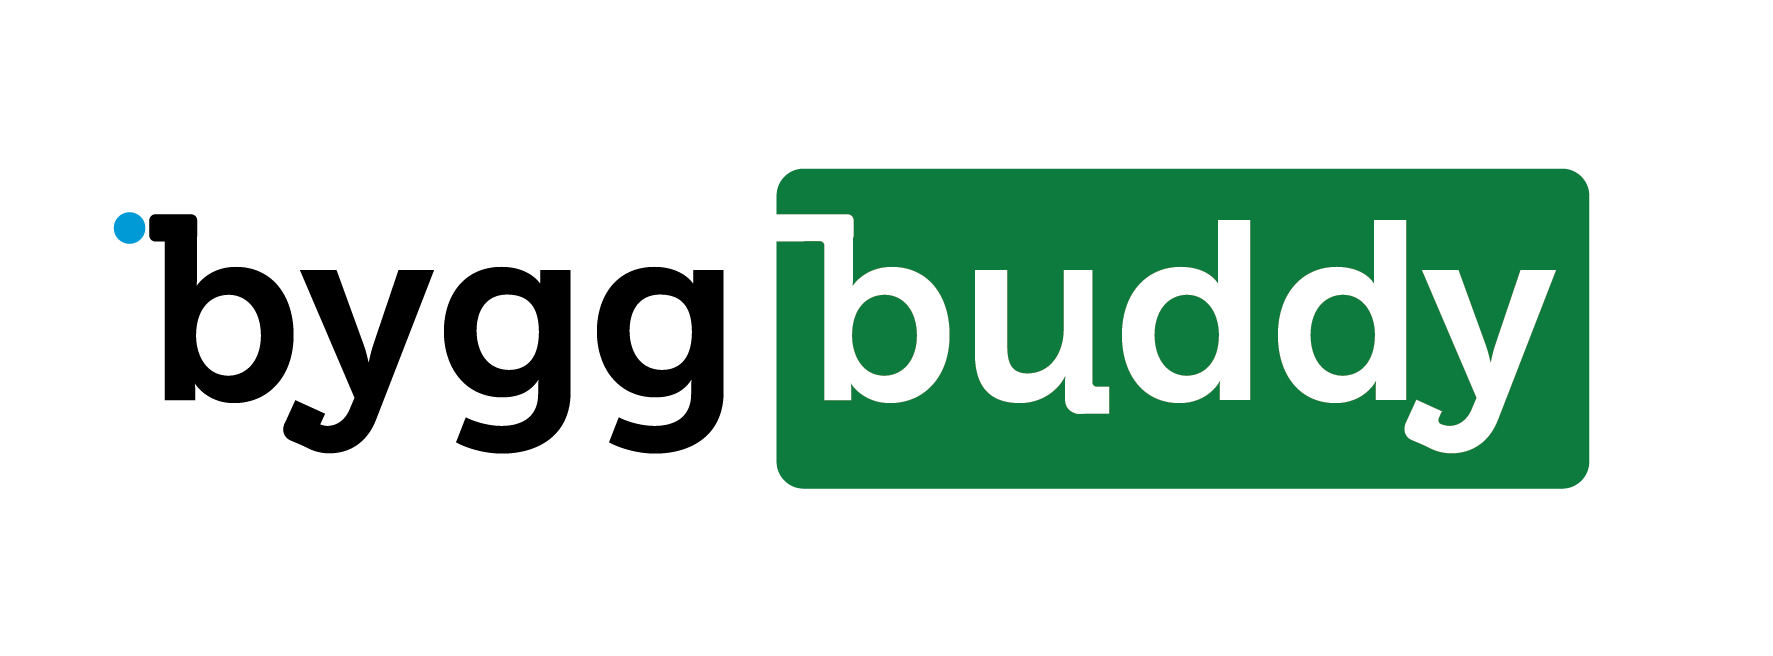 Byggbuddy header